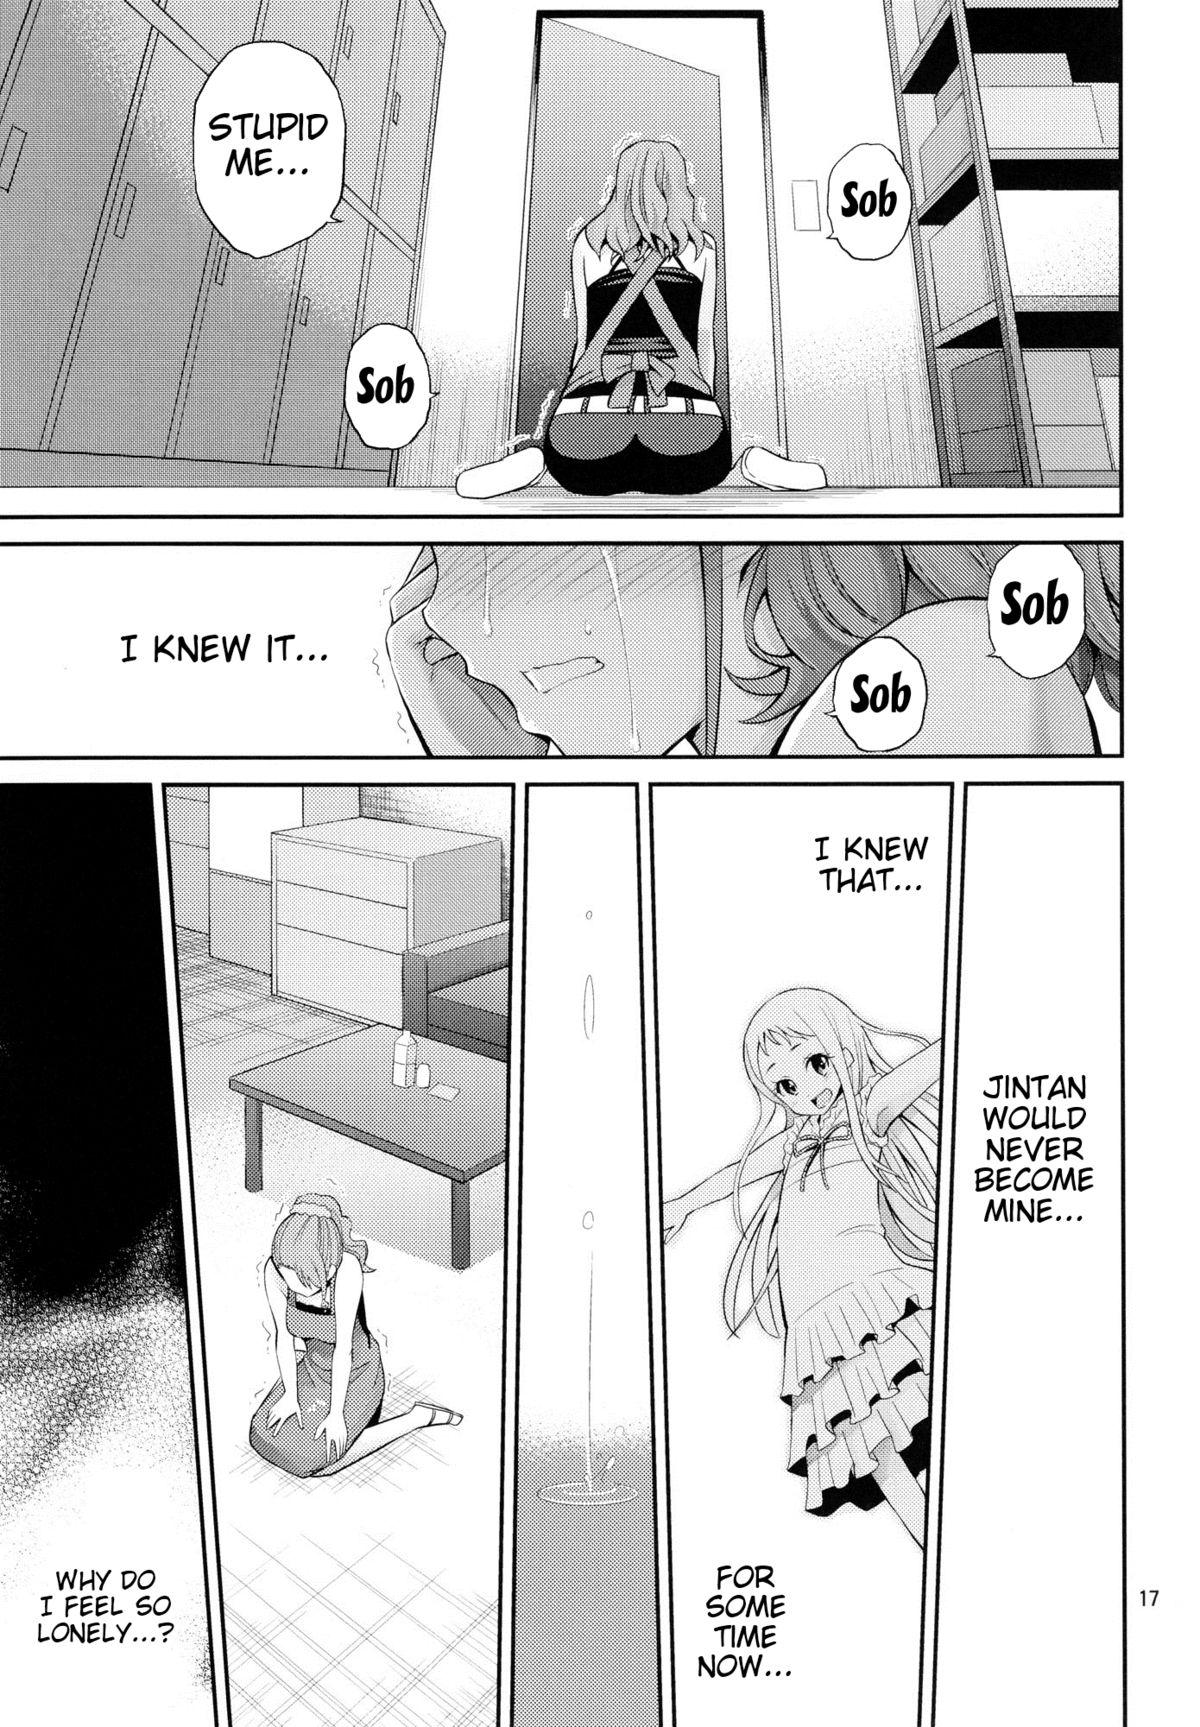 Ano Anaru no Sundome Manga wo Bokutachi wa Mada Shiranai | Ano Anaru - The Netorare Manga We Read That Day 15